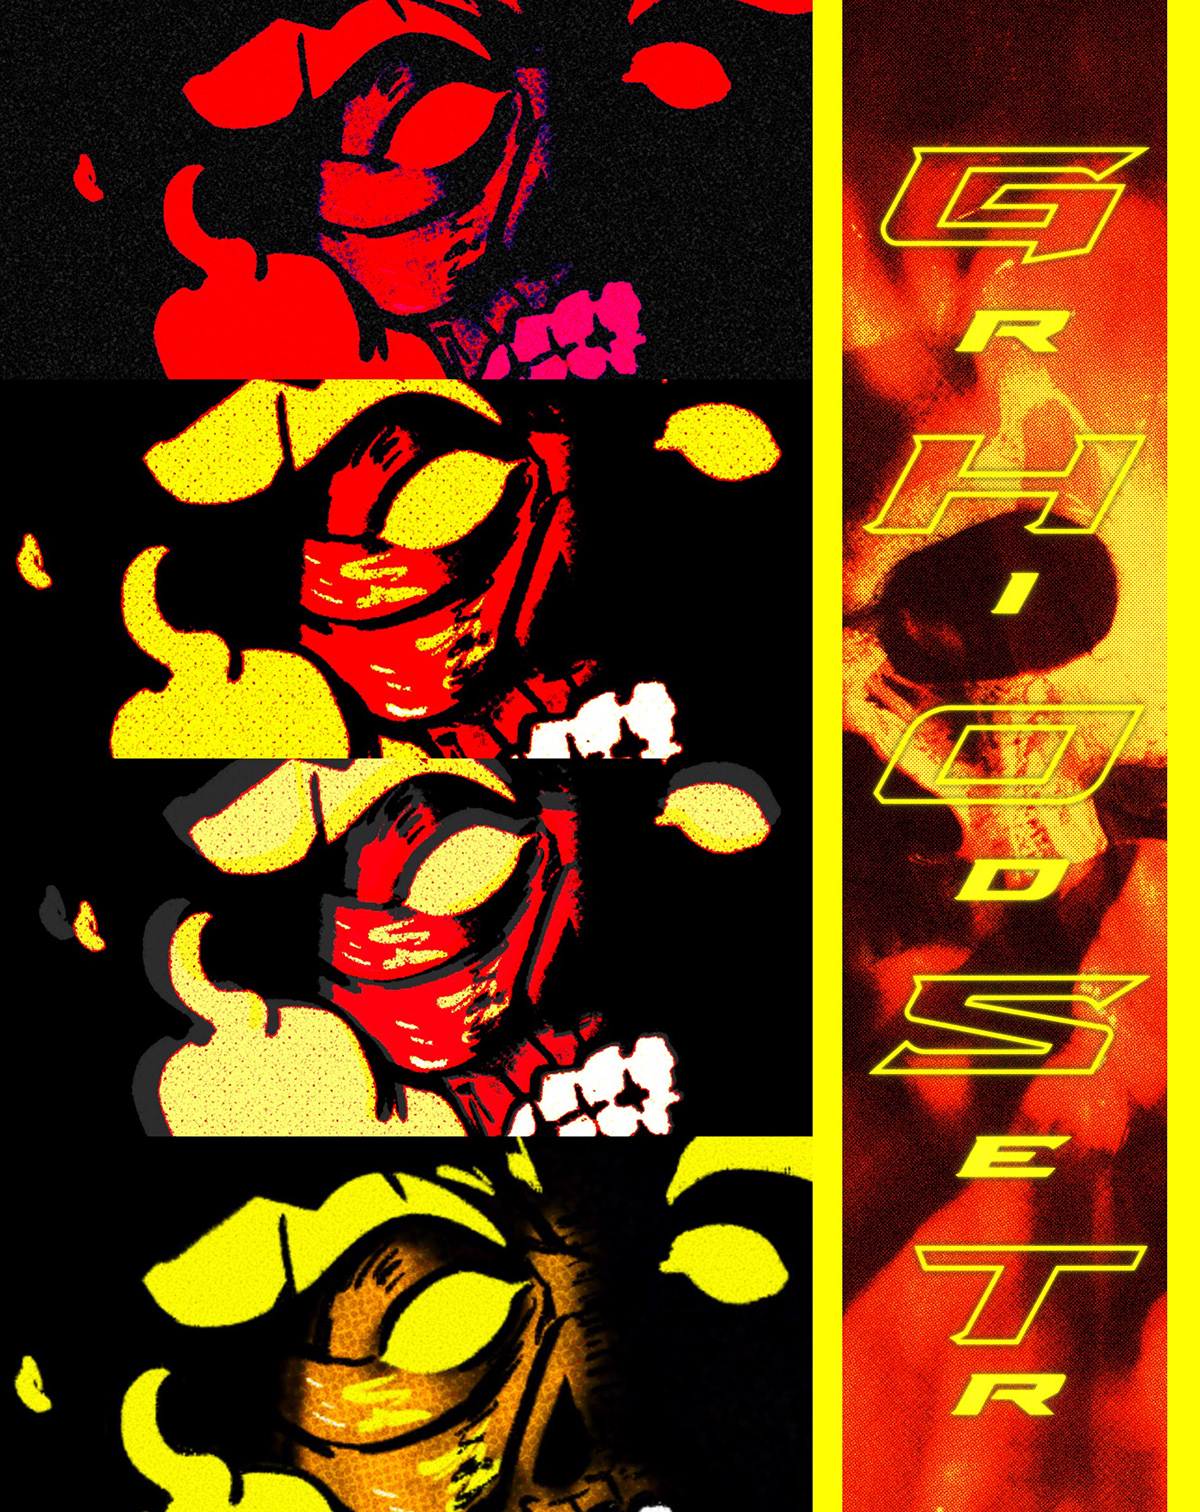 art digital illustration poster Poster Design scarface marvel spiderman Daredevil ghostrider Blade